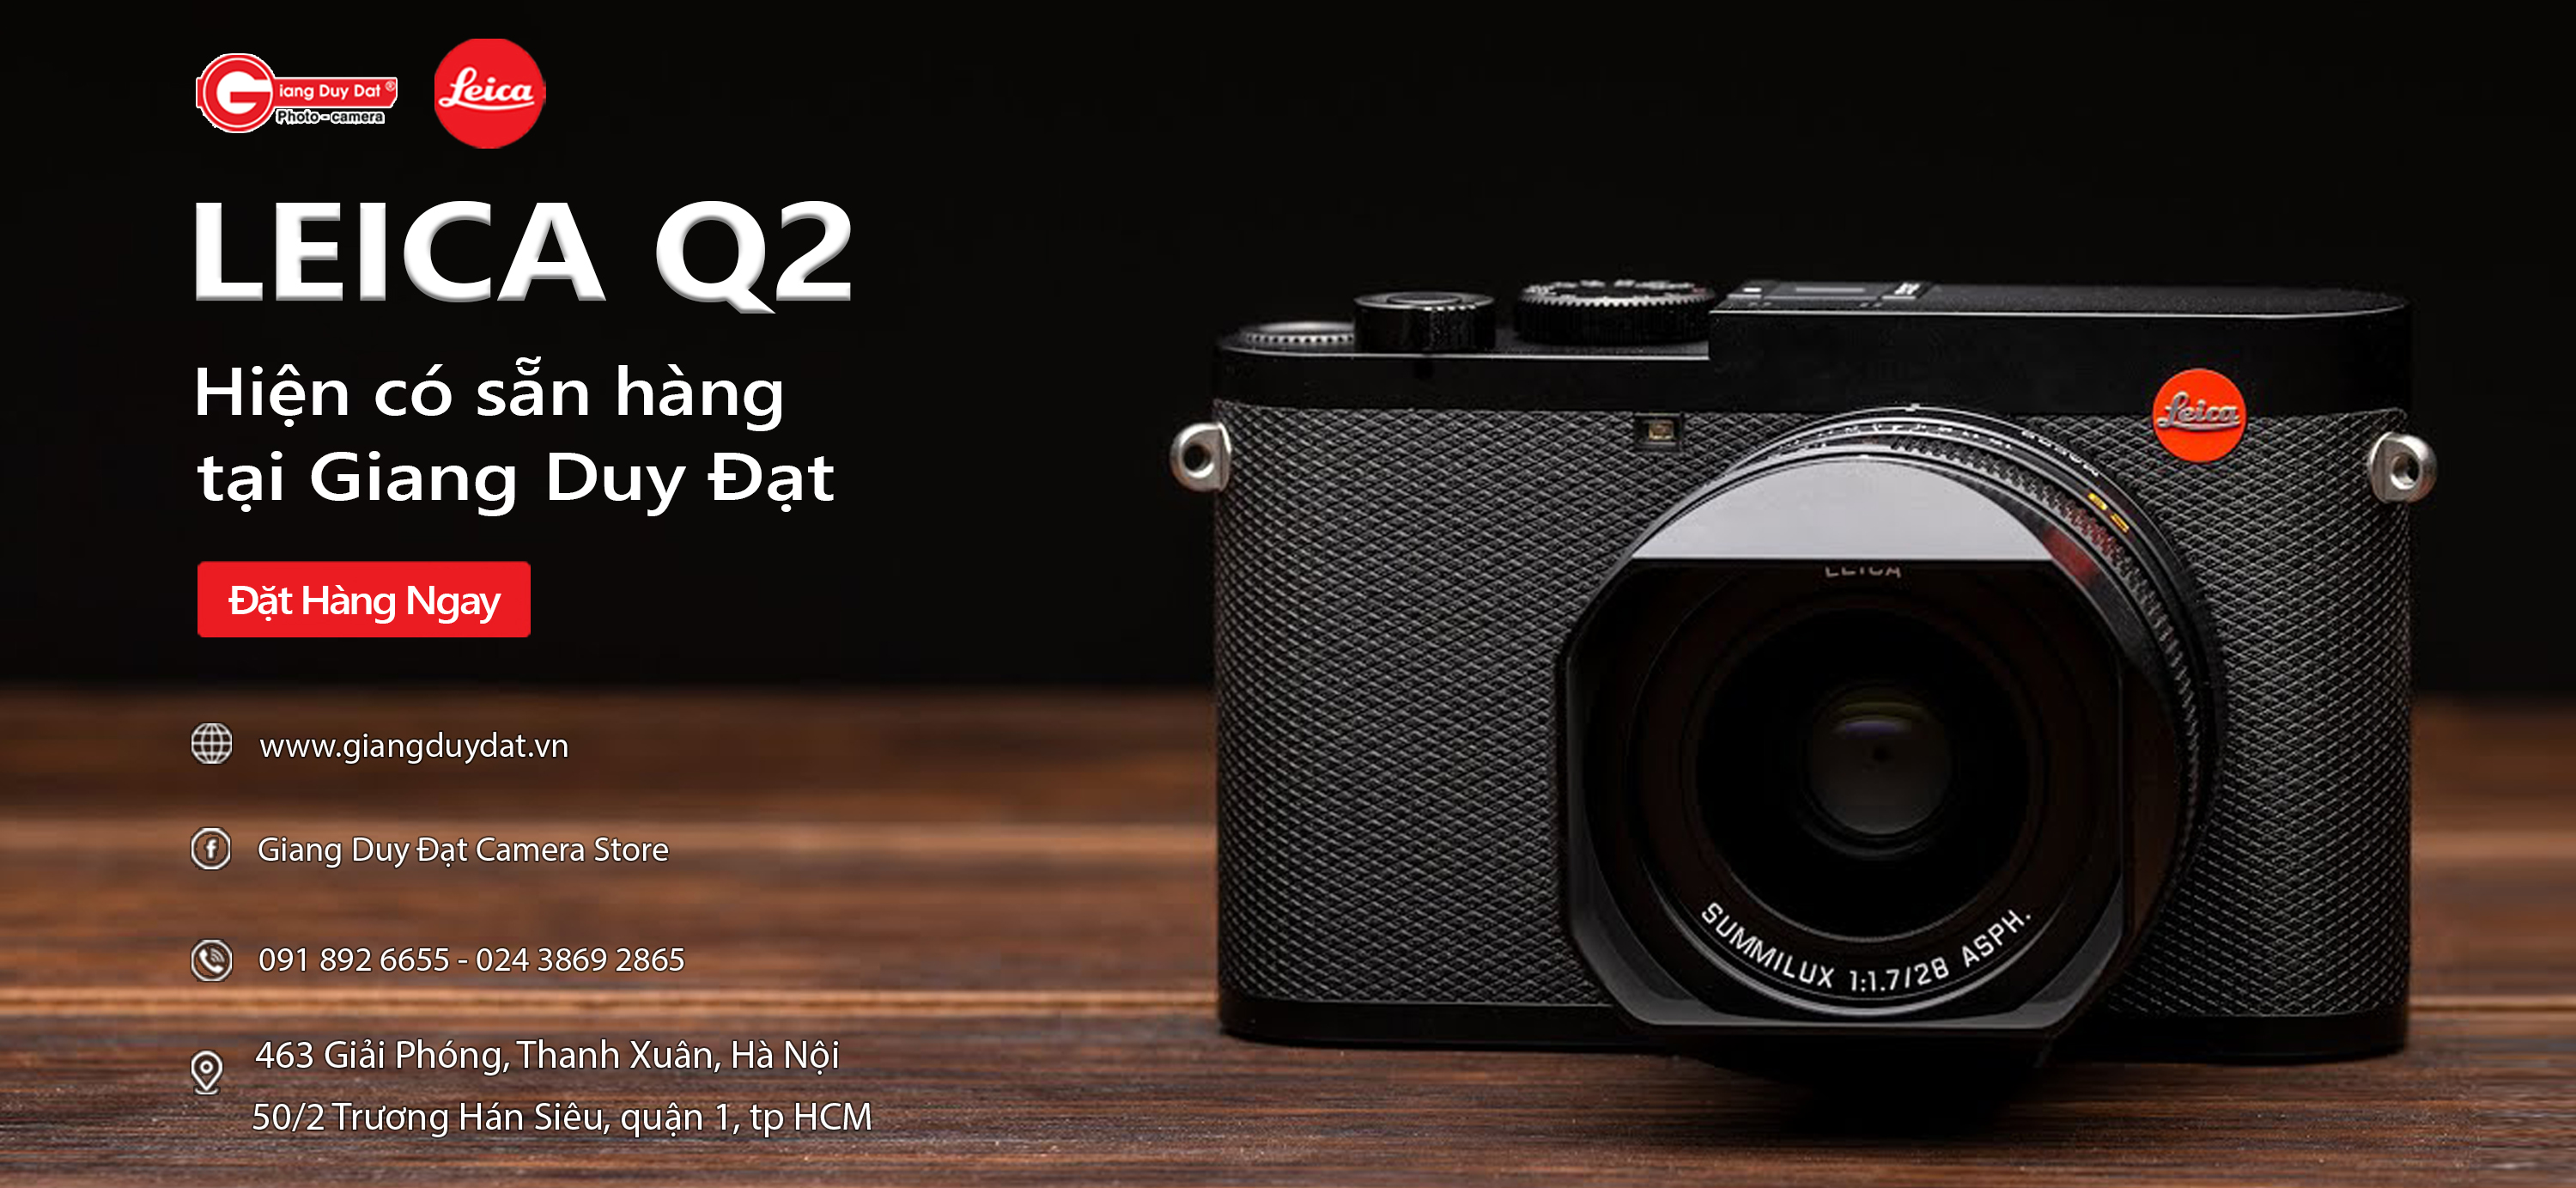 Leica Q2 đã có hàng